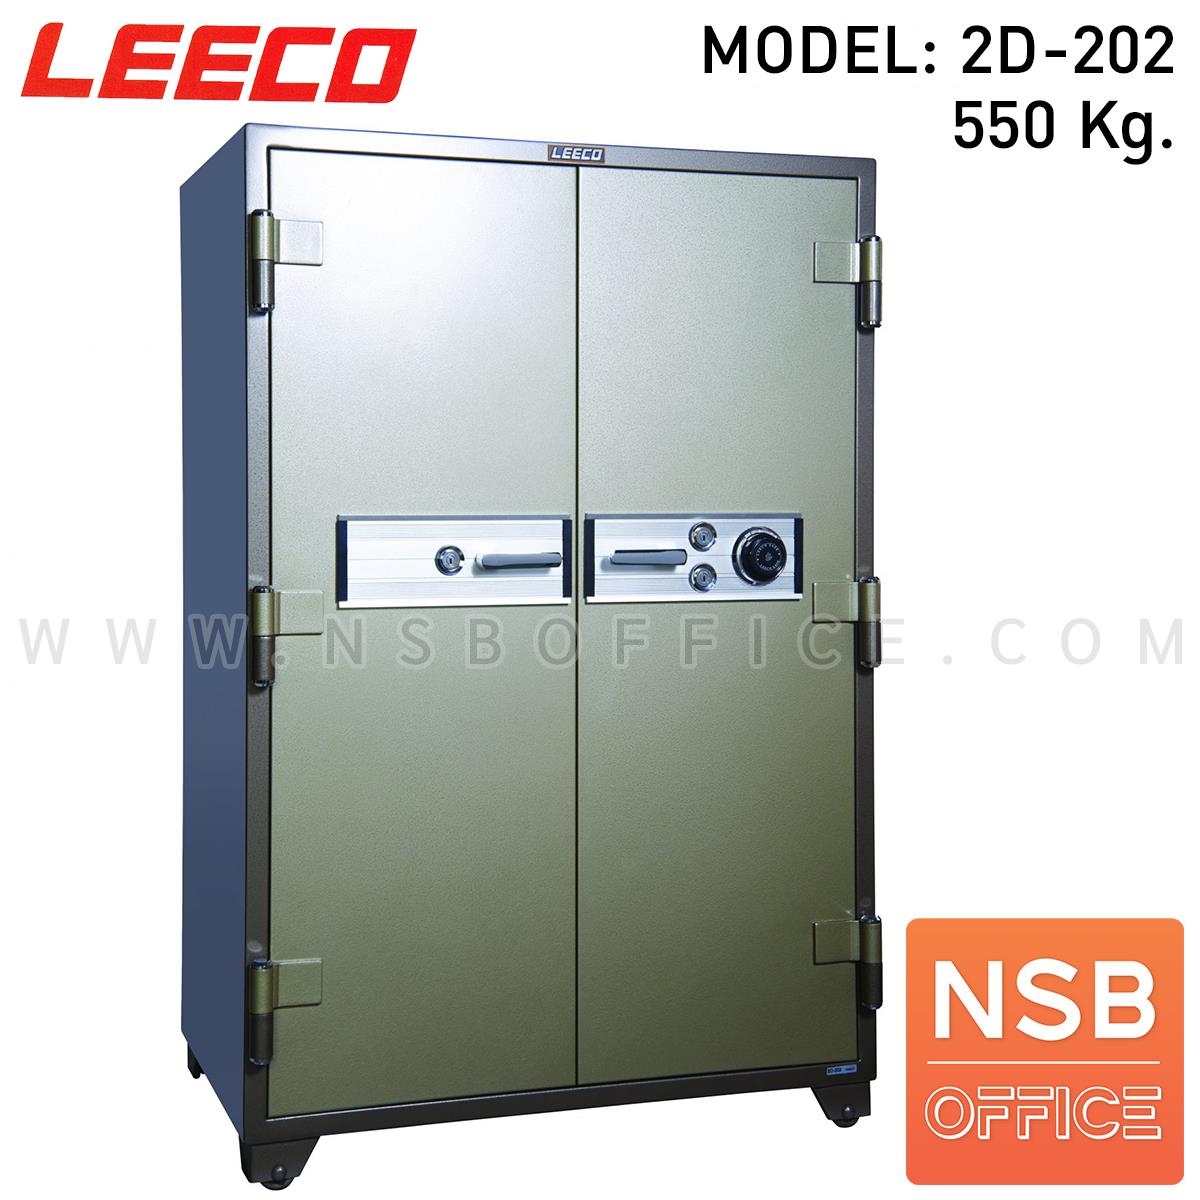 F02A055:ตู้เซฟนิรภัย 2 ประตู น้ำหนัก 550 Kg. ลีโก้ รุ่น LEECO 2D-202 (2 กุญแจ 1 รหัส)   